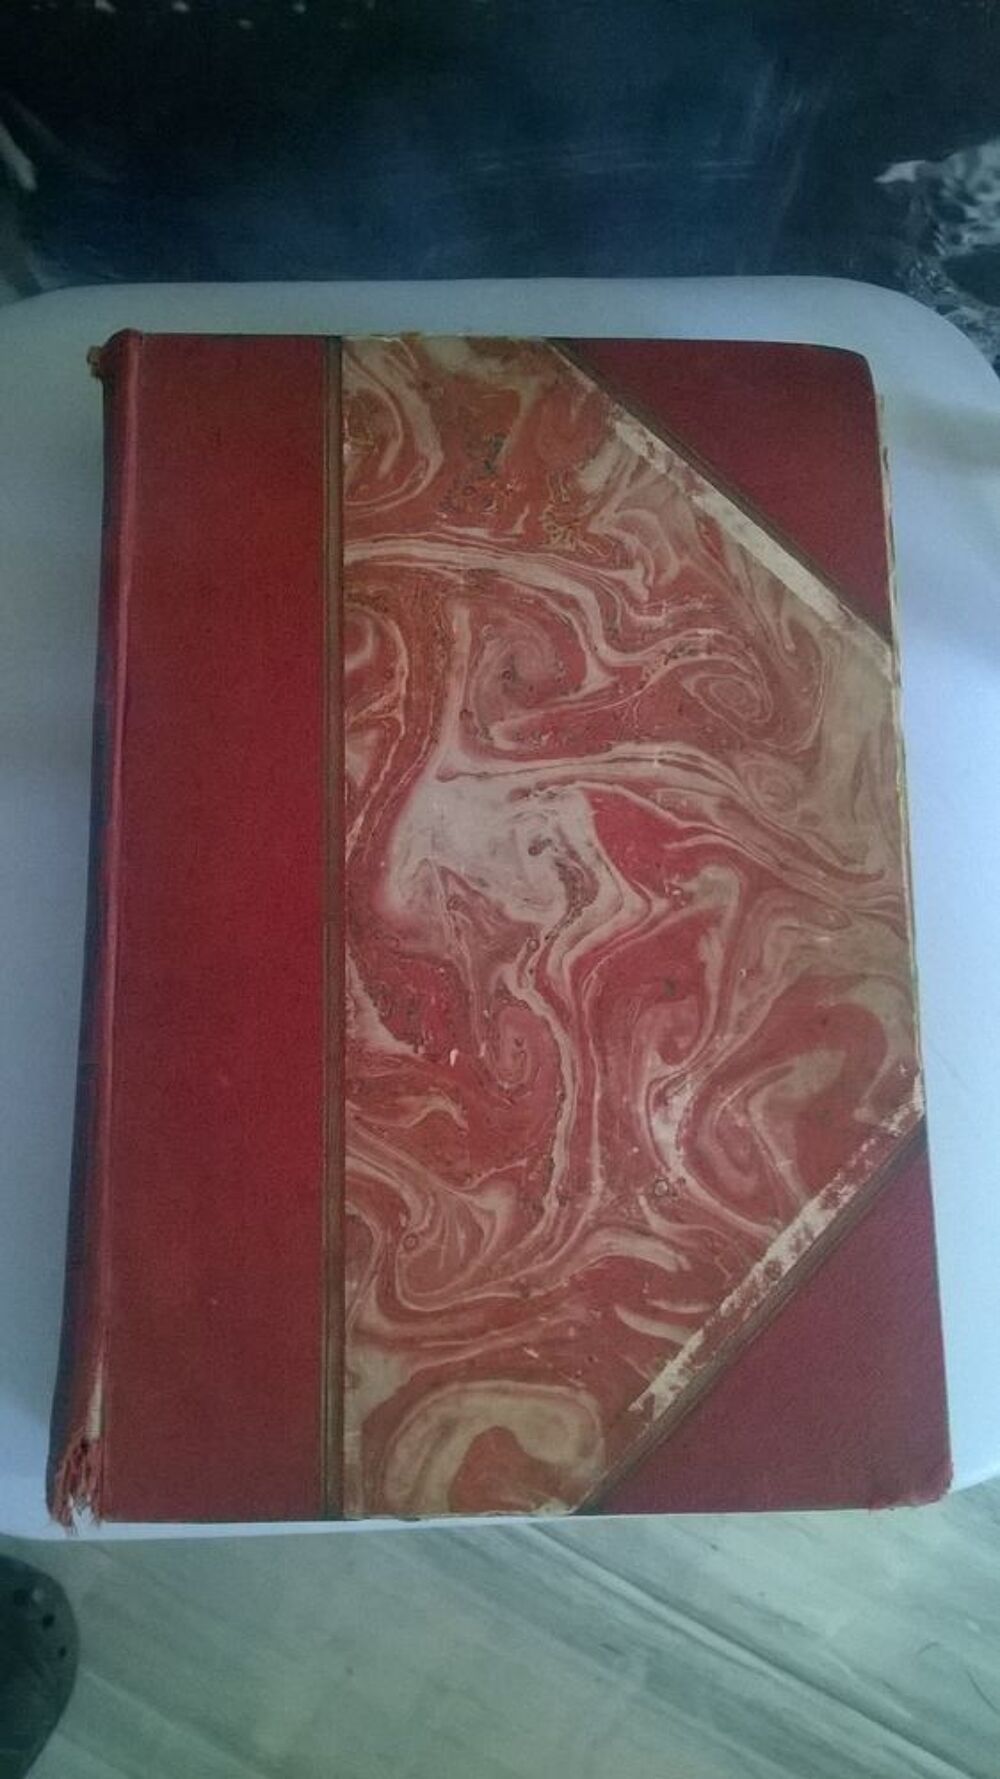 Livre C?urs Vaillants Broch&eacute; 
1928
Emile Pech
&Eacute;diteur Boi Livres et BD